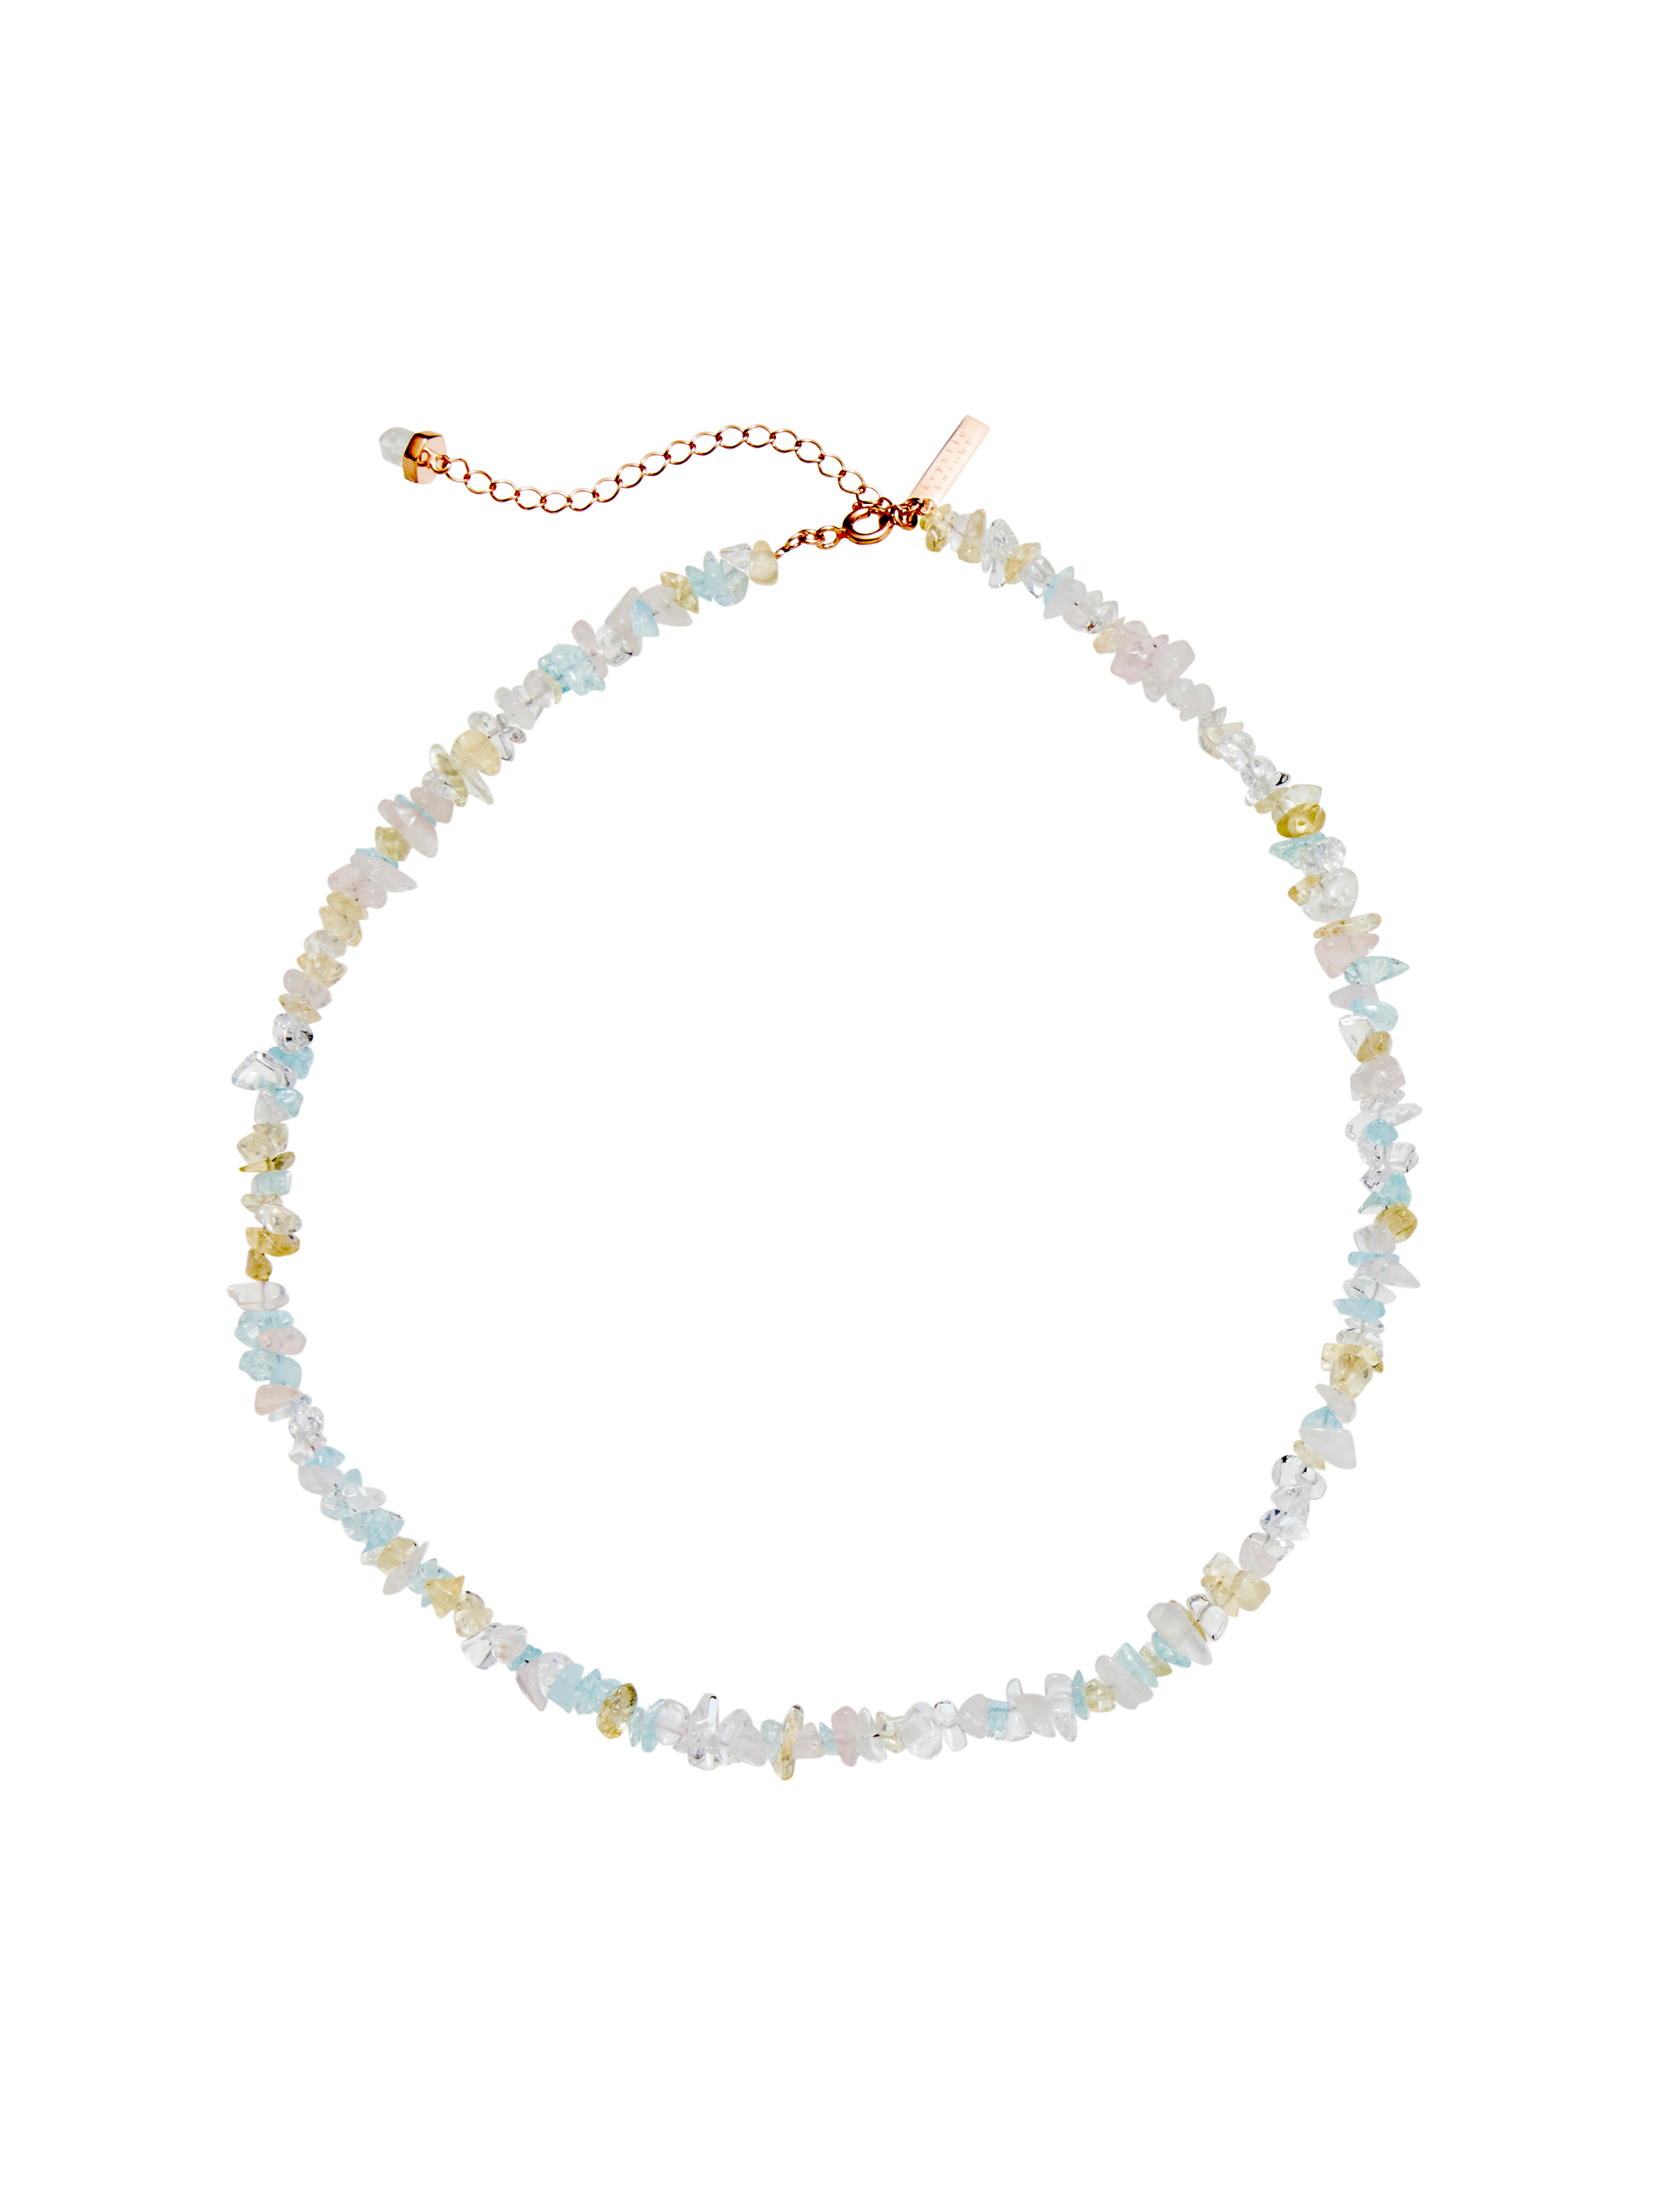 peony crystal necklace | clear quartz + rose quartz + aquamarine + citrine